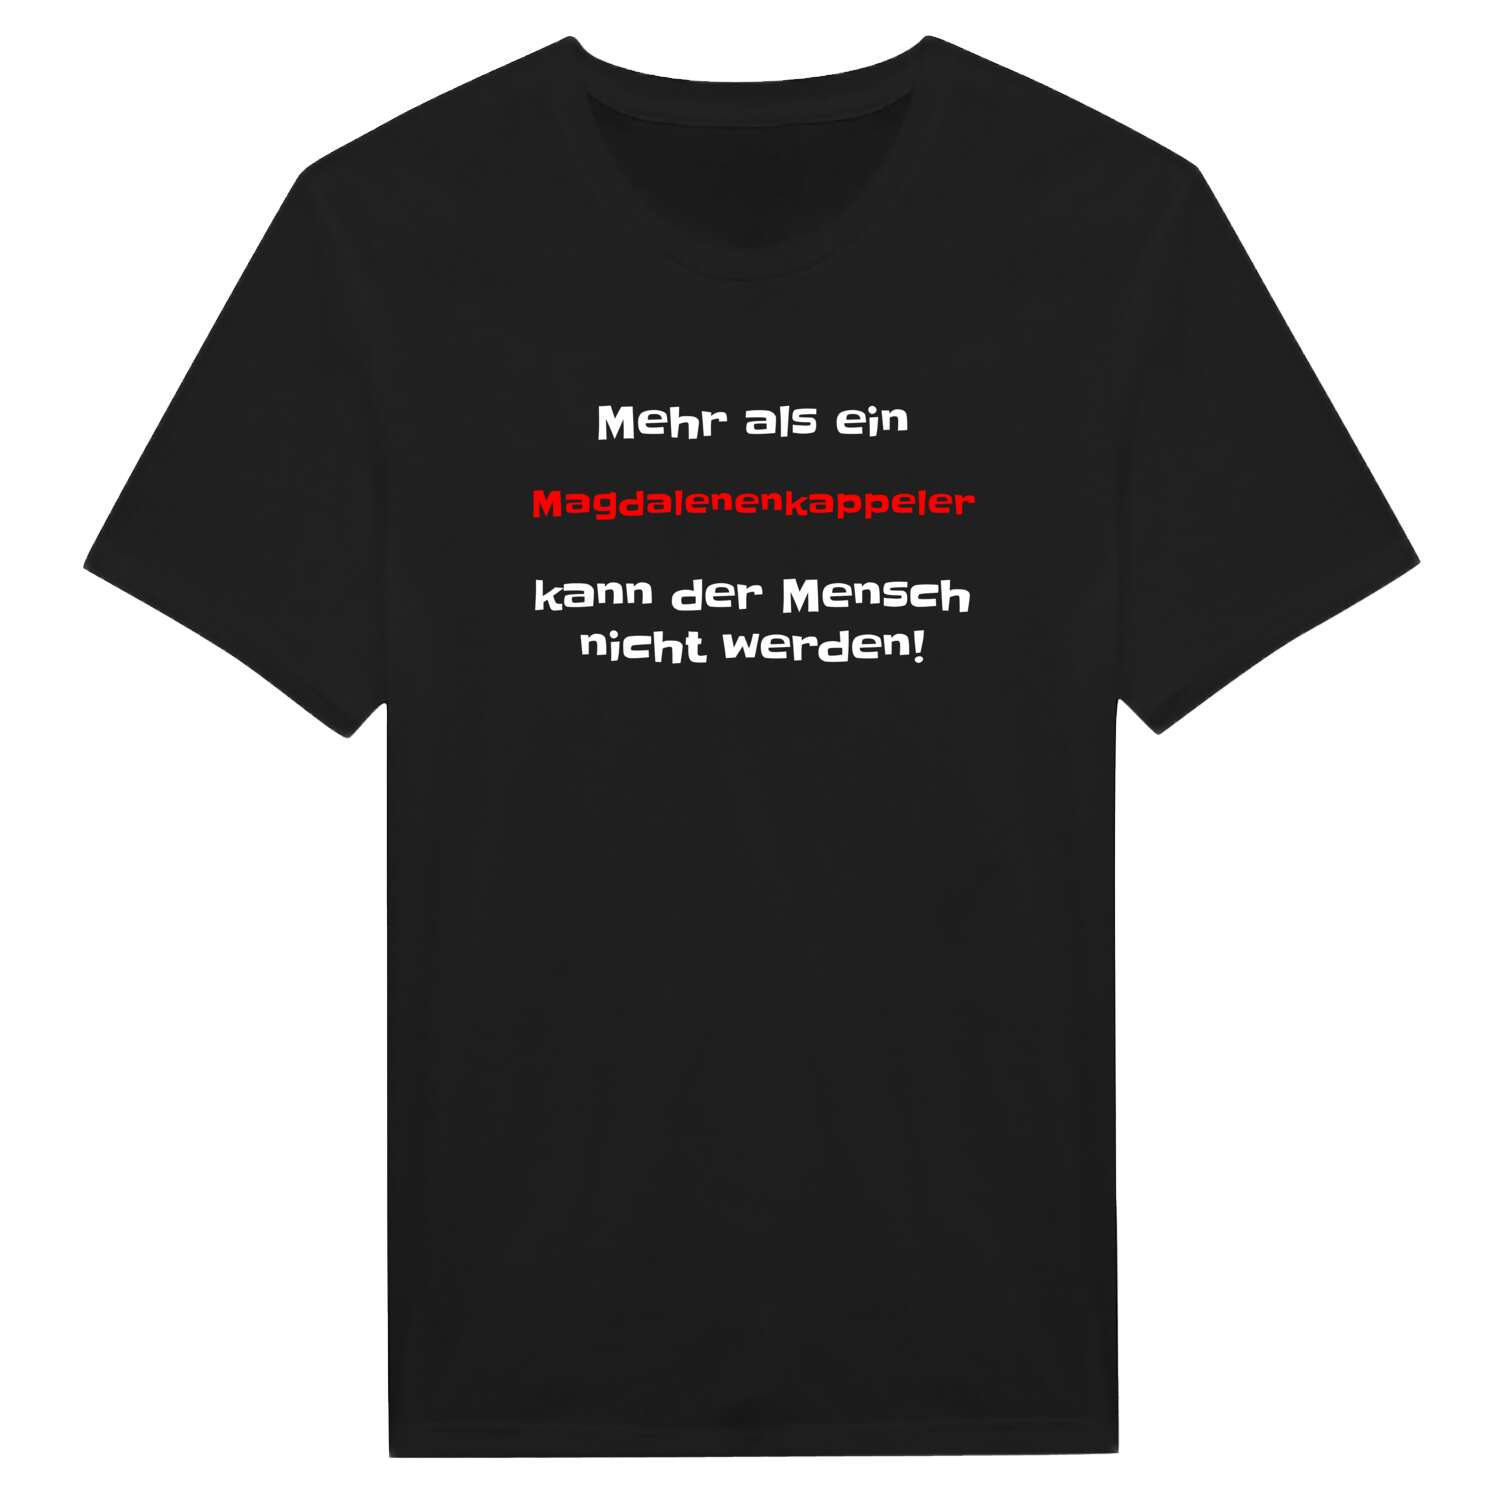 Magdalenenkappel T-Shirt »Mehr als ein«